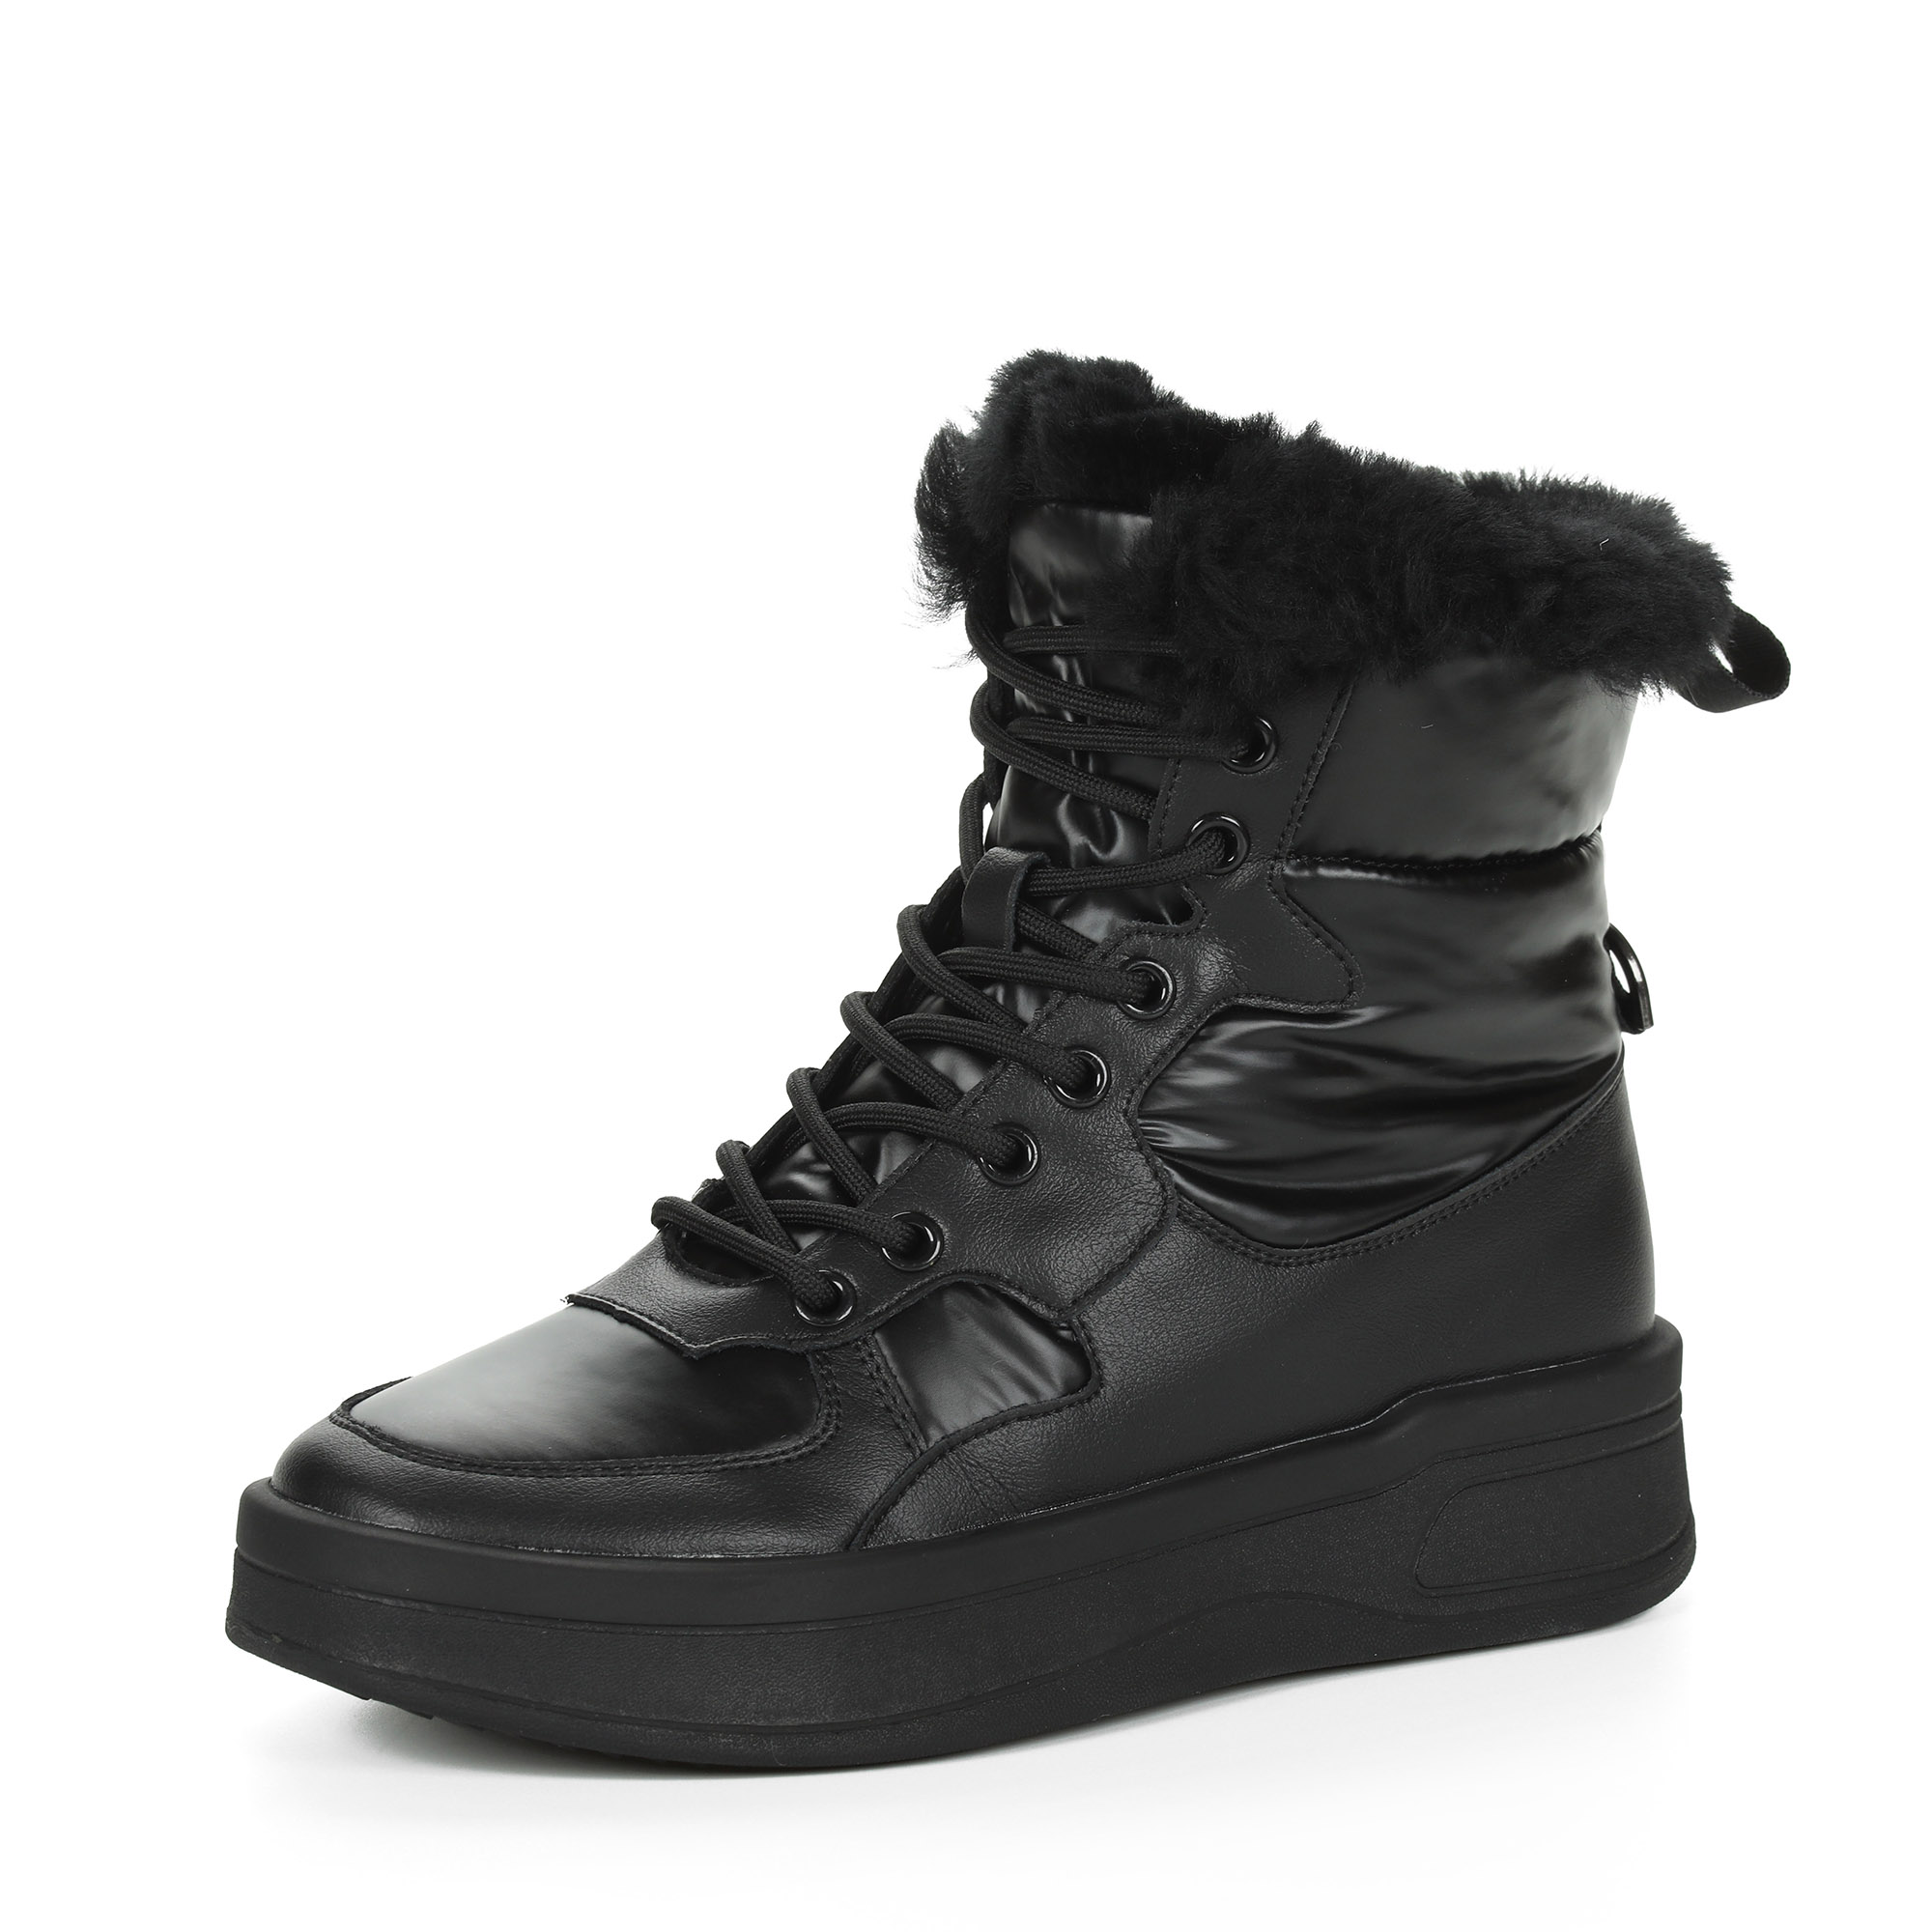 Черные высокие кроссовки из комбинированных материалов смеховой опушкой на подкладке из натуральной шерсти на утолщенной платформе Respect, размер 39, цвет черный - фото 3